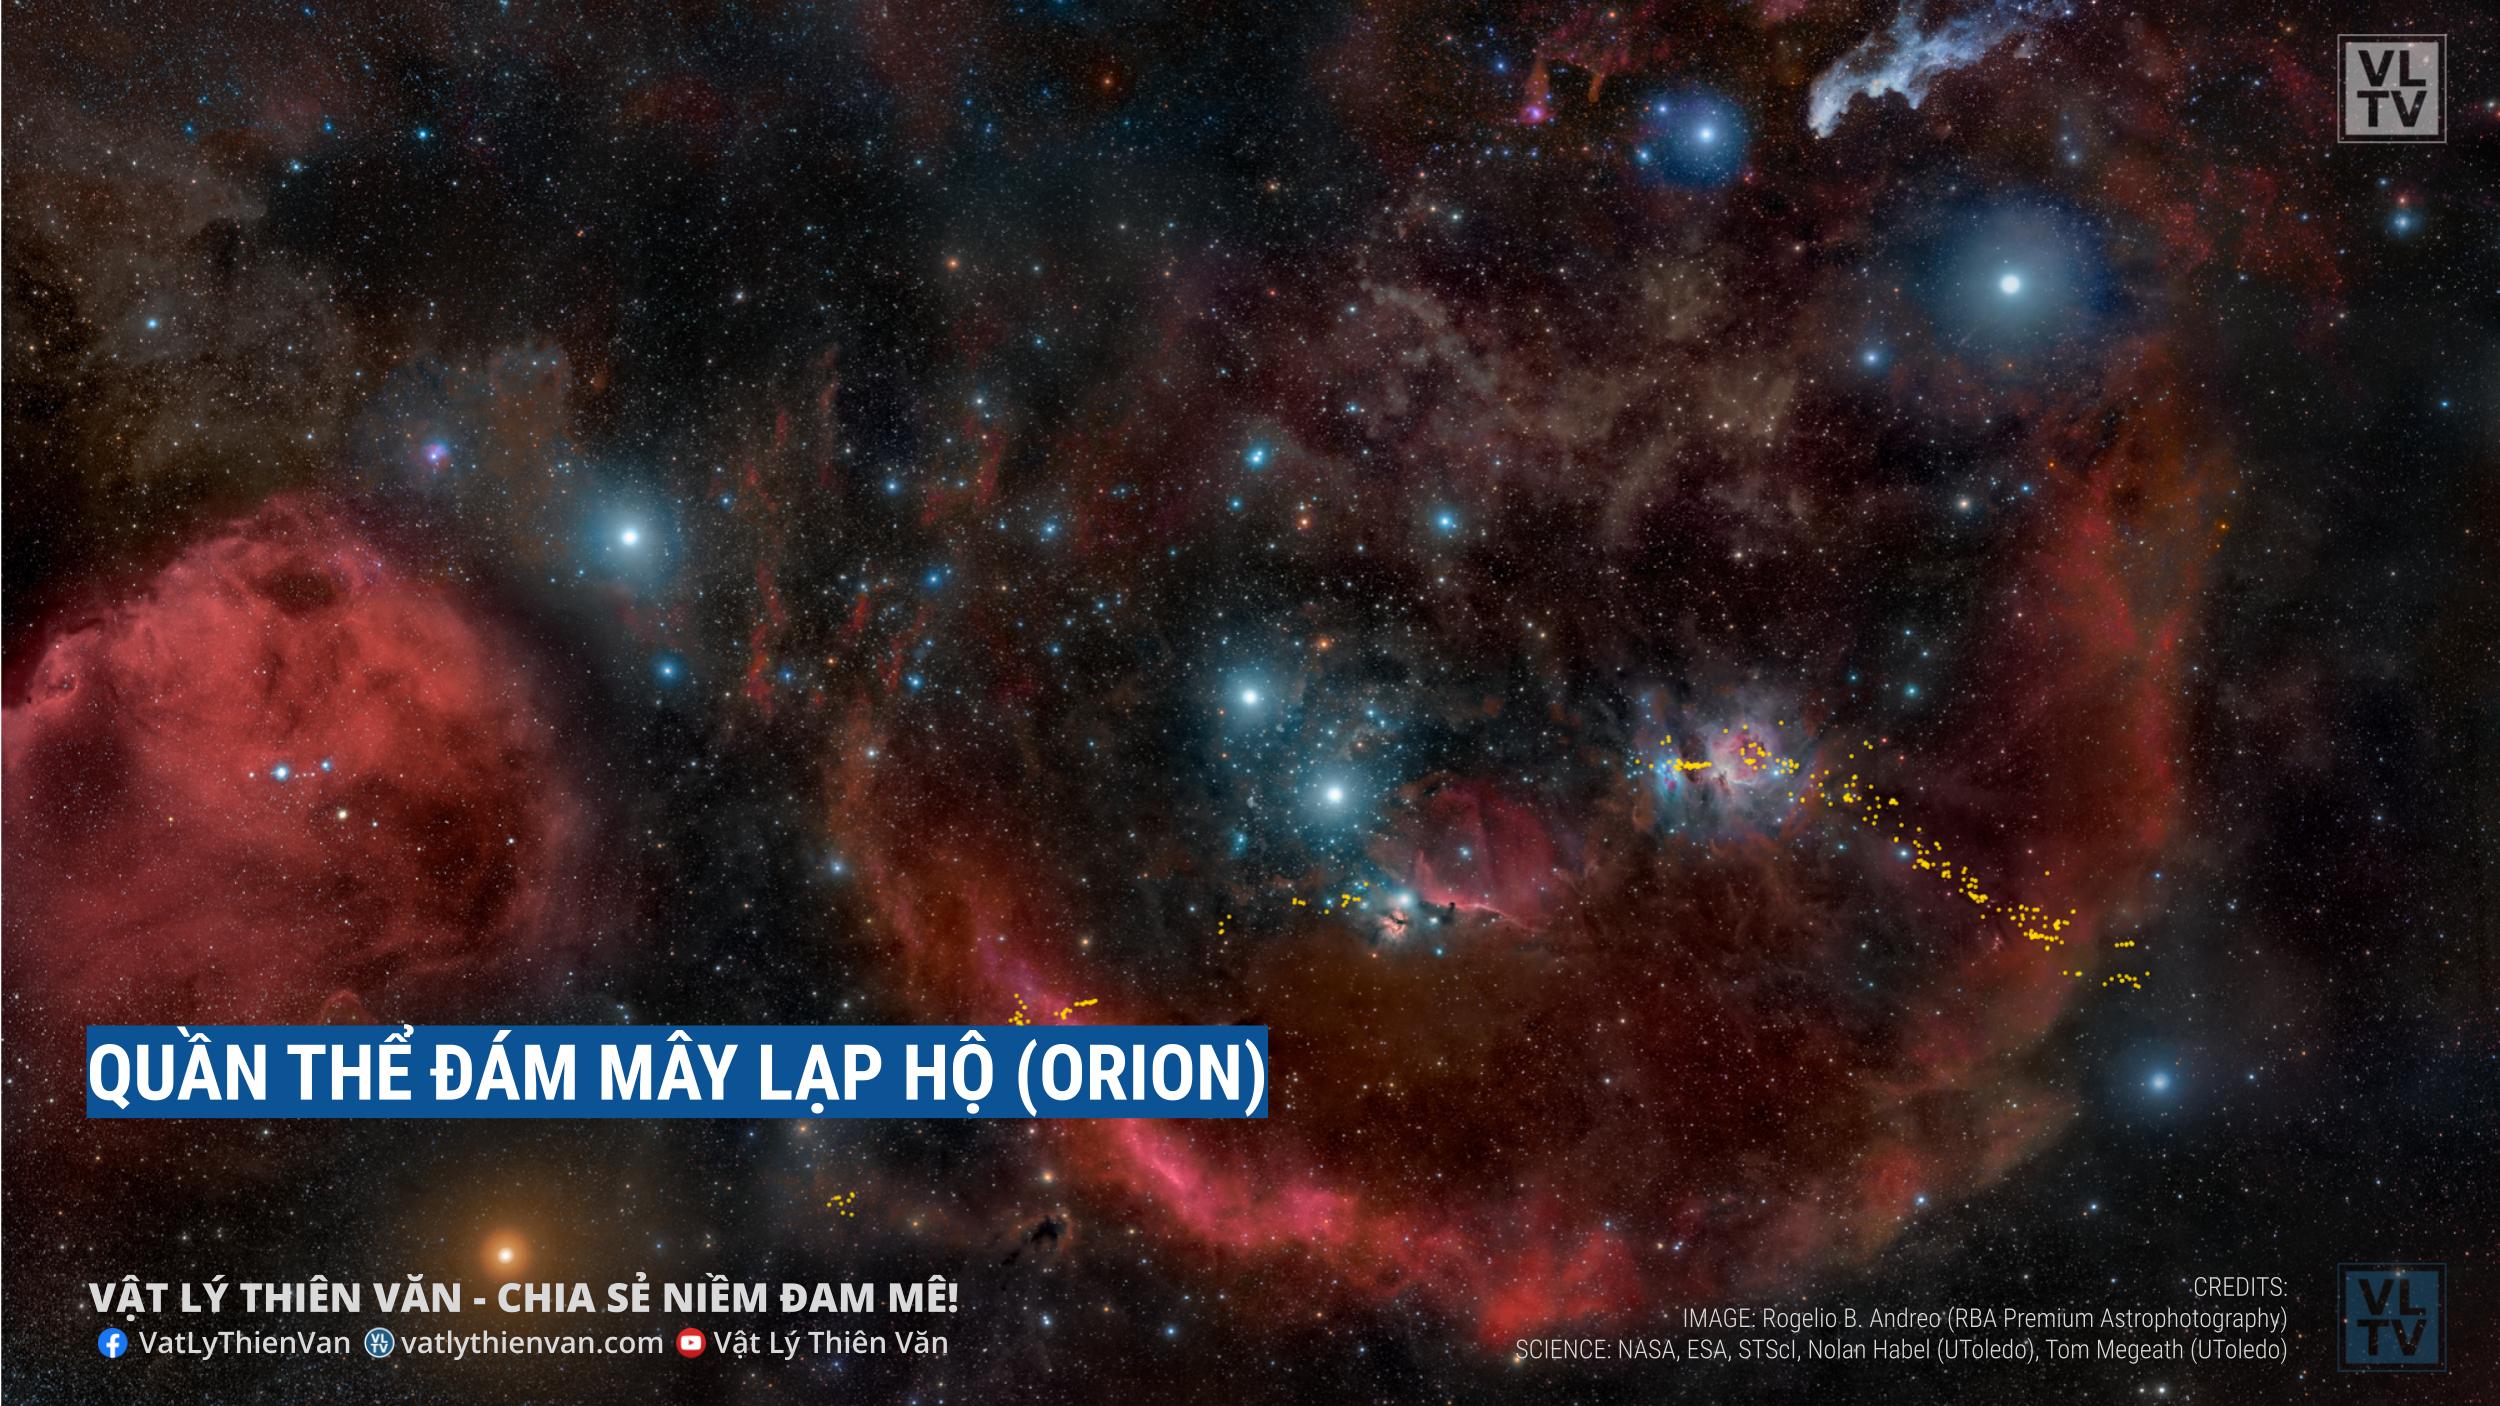 Hình ảnh toàn bộ quần thể đám mây Lạp Hộ (Orion), khu vực hình thành sao chính gần nhất với Trái Đất.